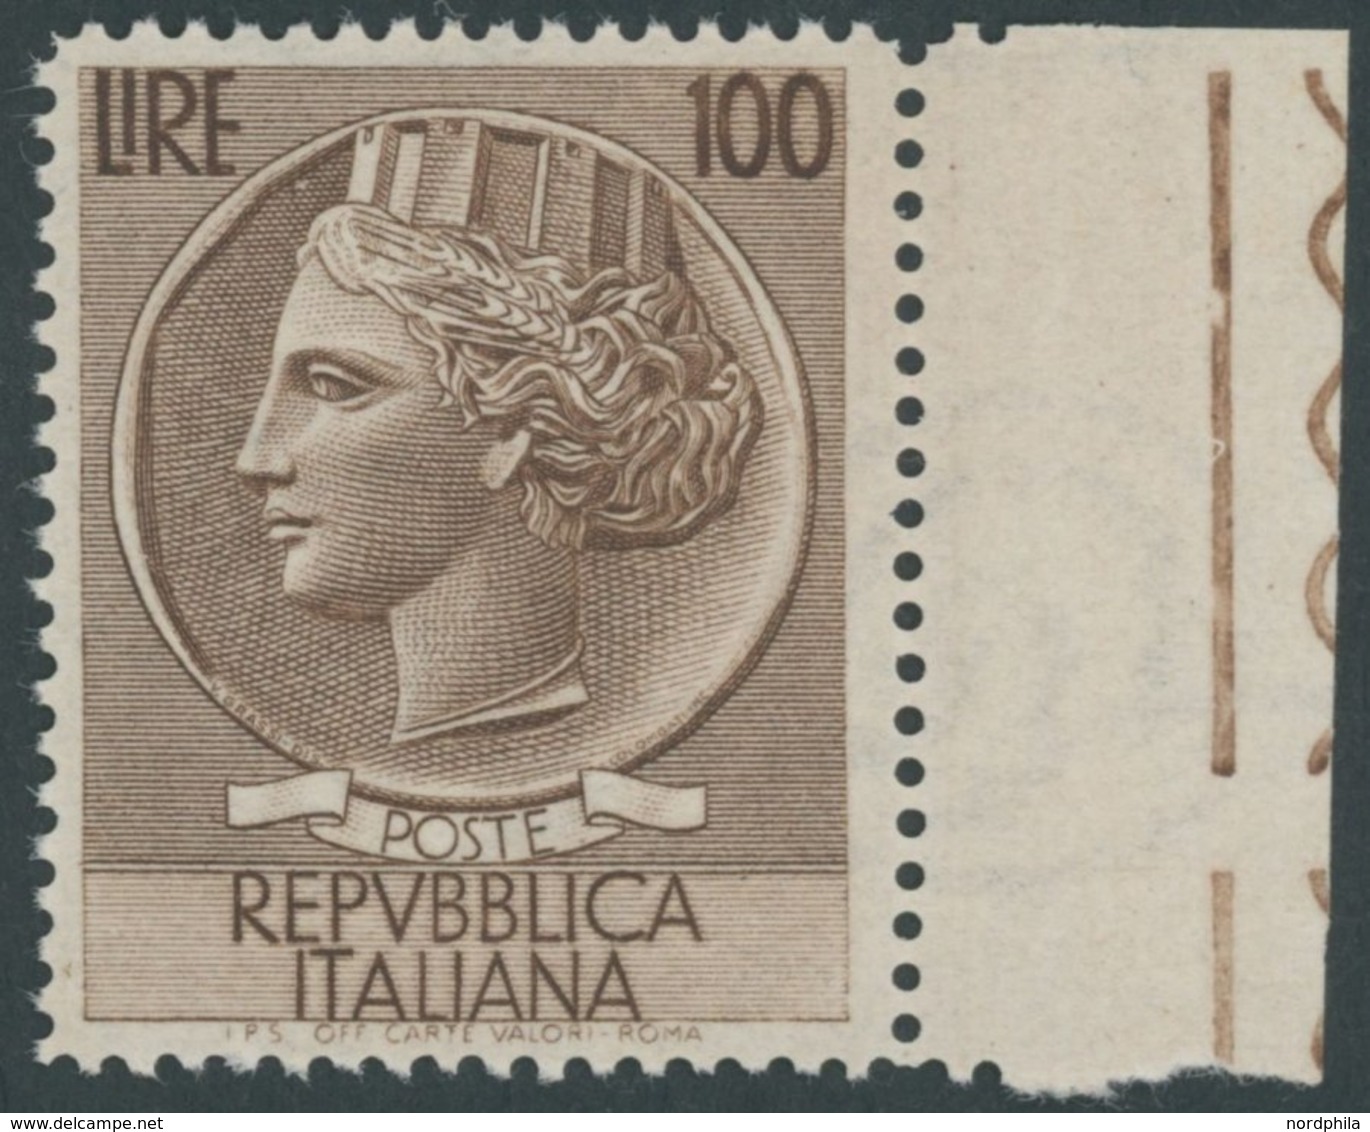 ITALIEN 920A **, 1954, 100 L. Braun, Wz. 3, Gezähnt L 131/4, Postfrisch, Pracht, Mi. 200.- - Unclassified